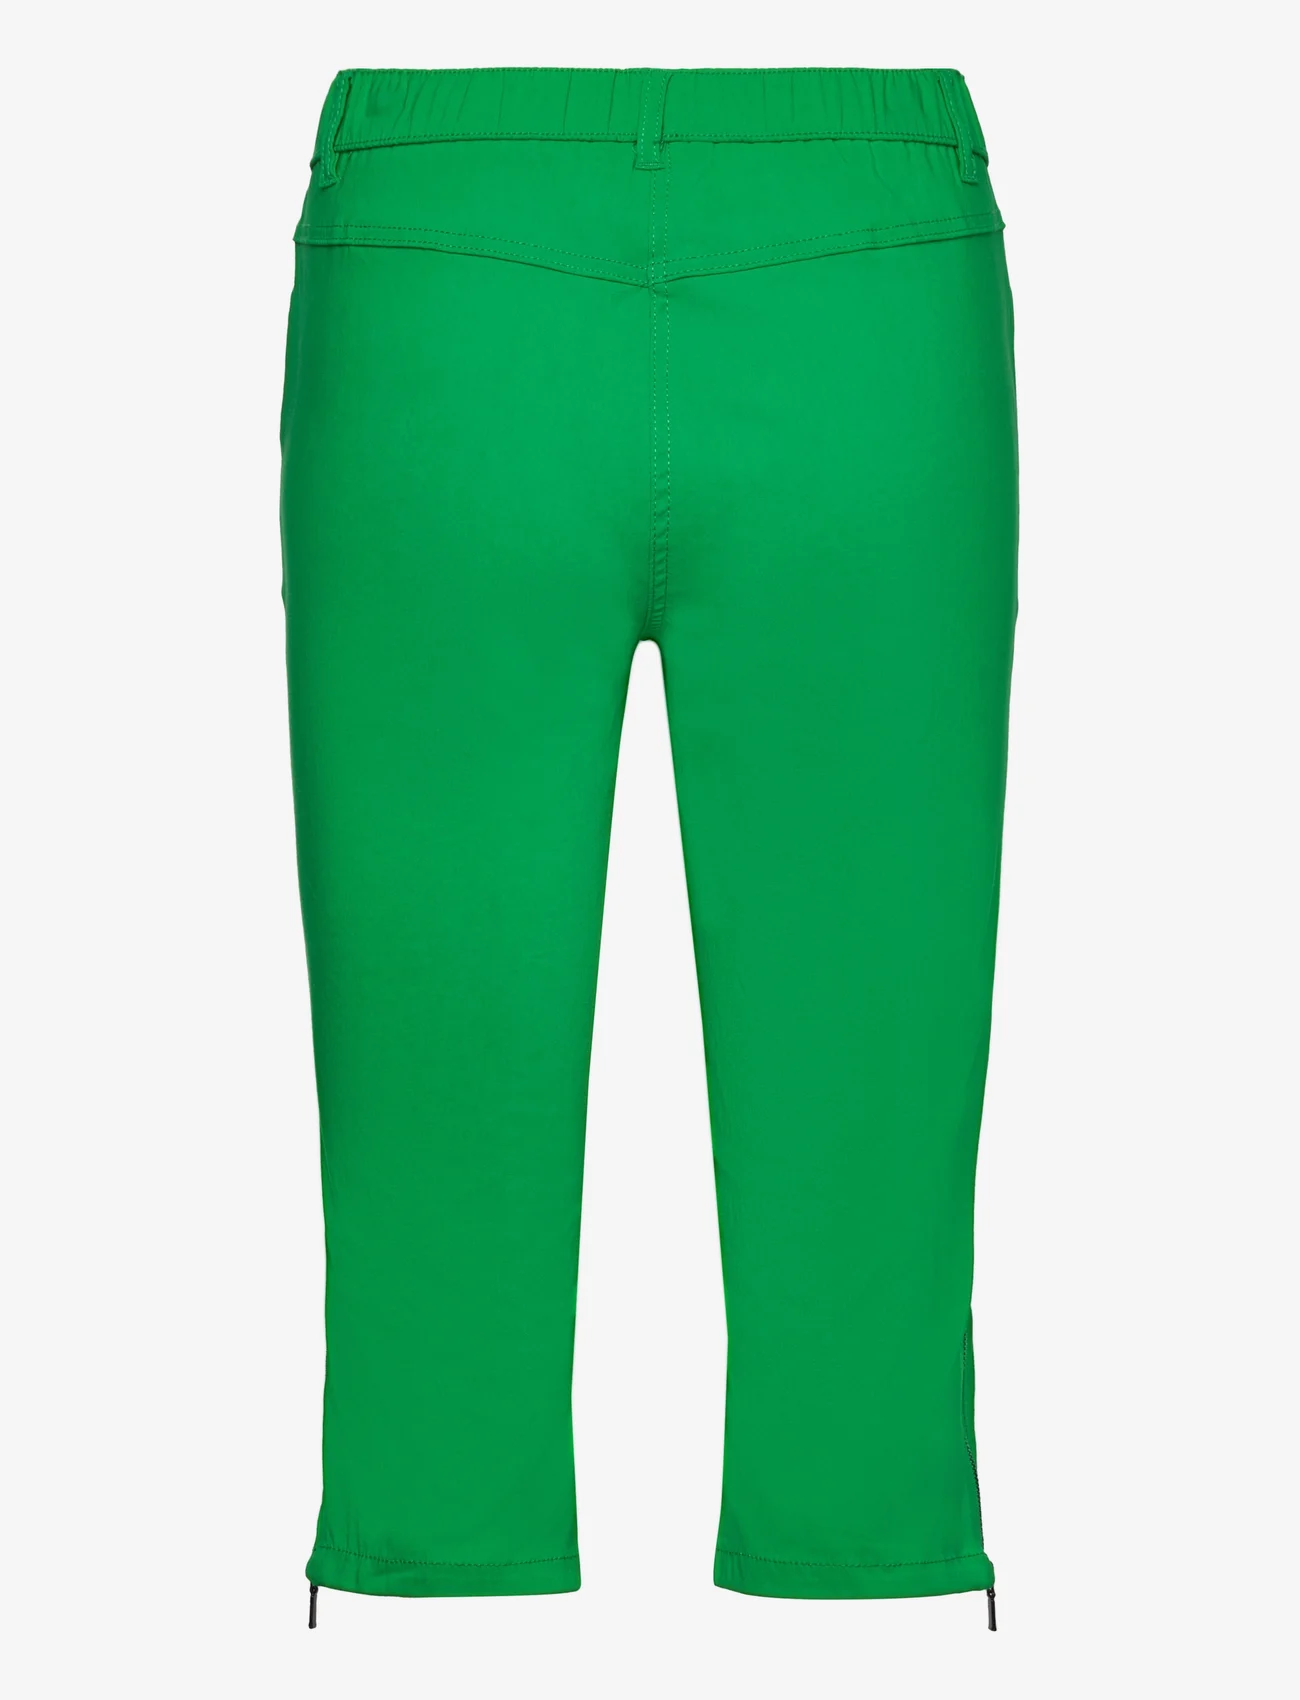 Brandtex - Capri pants - capri pants - bright green - 1